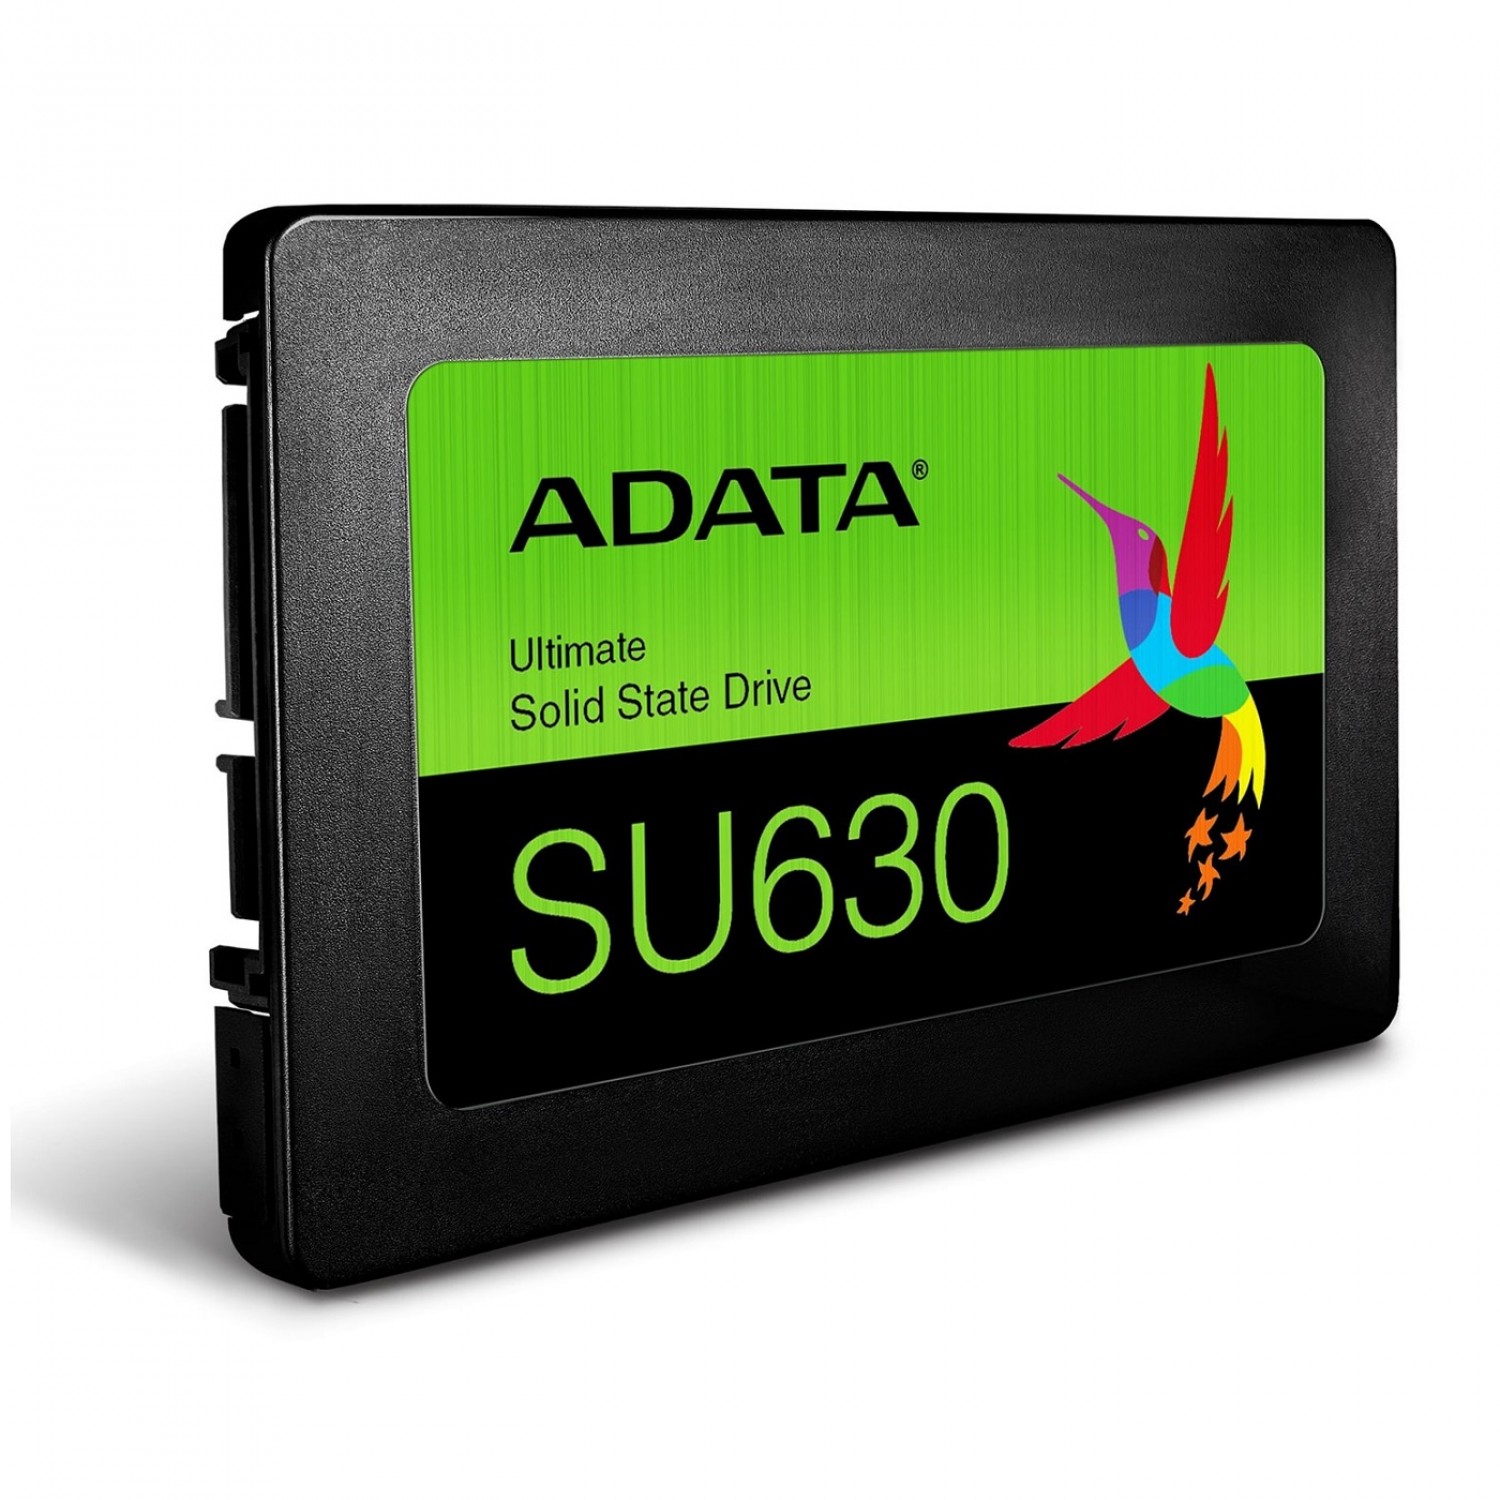 حافظه اس اس دی ADATA Ultimate SU630 240GB-1